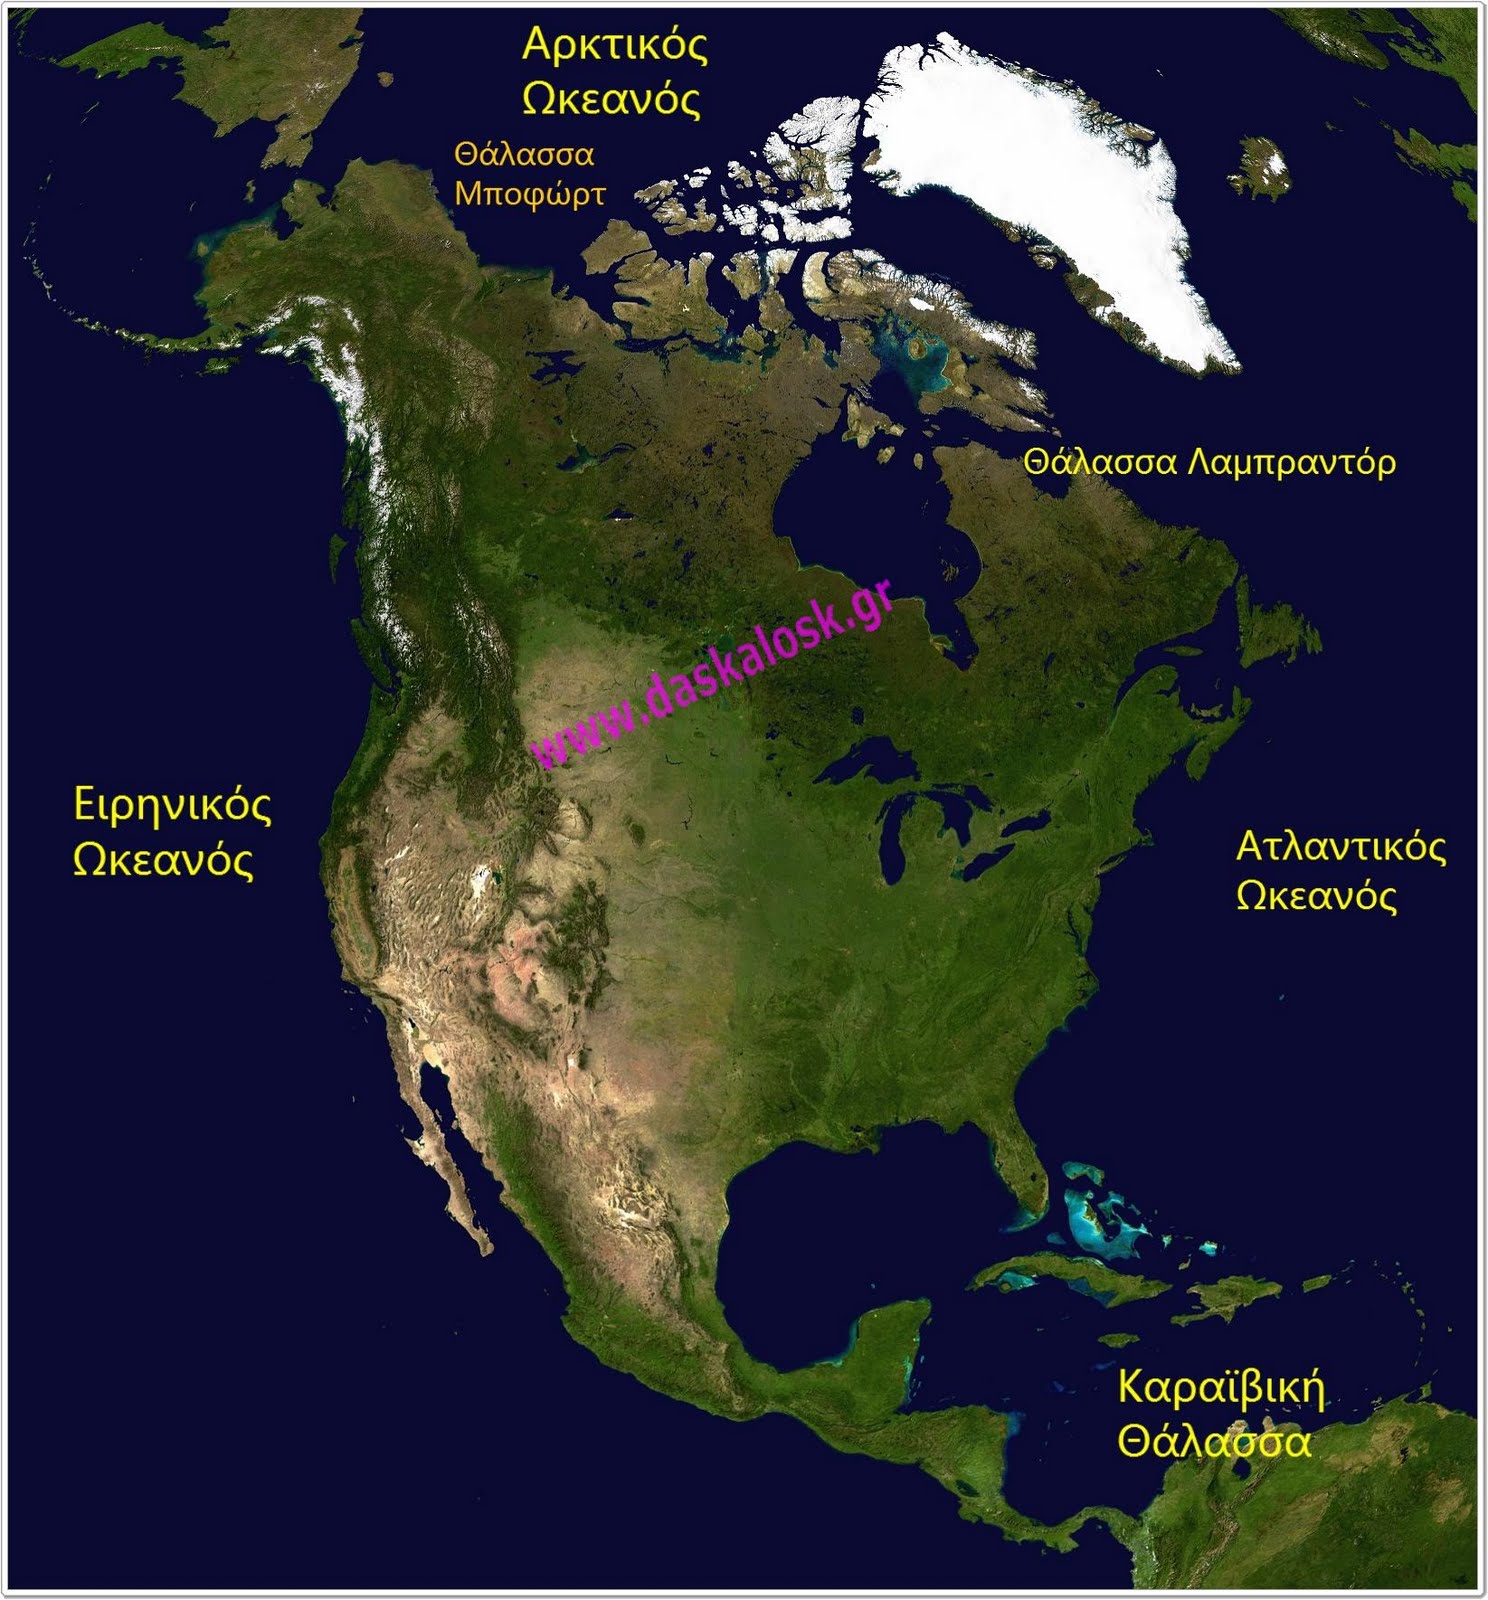 Η θέση και το φυσικό περιβάλλον της Βόρειας Αμερικής, Διαμαντής Χαράλαμπος, εκπαιδευτθ ικά λογισμικά γιατη γεωγραφία Στ τάξης, ασκήσεις on line για την γεωγραφία Στ τάξης, Βόρεια Αμερική, Κεντρική Αμερική, απαλάχια, όρη Βραχώδη όρη, πεδιάδα Καναδά, αμερικανική πεδιάδα, λίμνες Βόρειας Αμερικής , ποτάμια Αμερικής, Παναμάς, Νιαγάρας ποταμος, καταρράκτες Νιαγάρα, Εσκιμώοι, μισισιπης, 